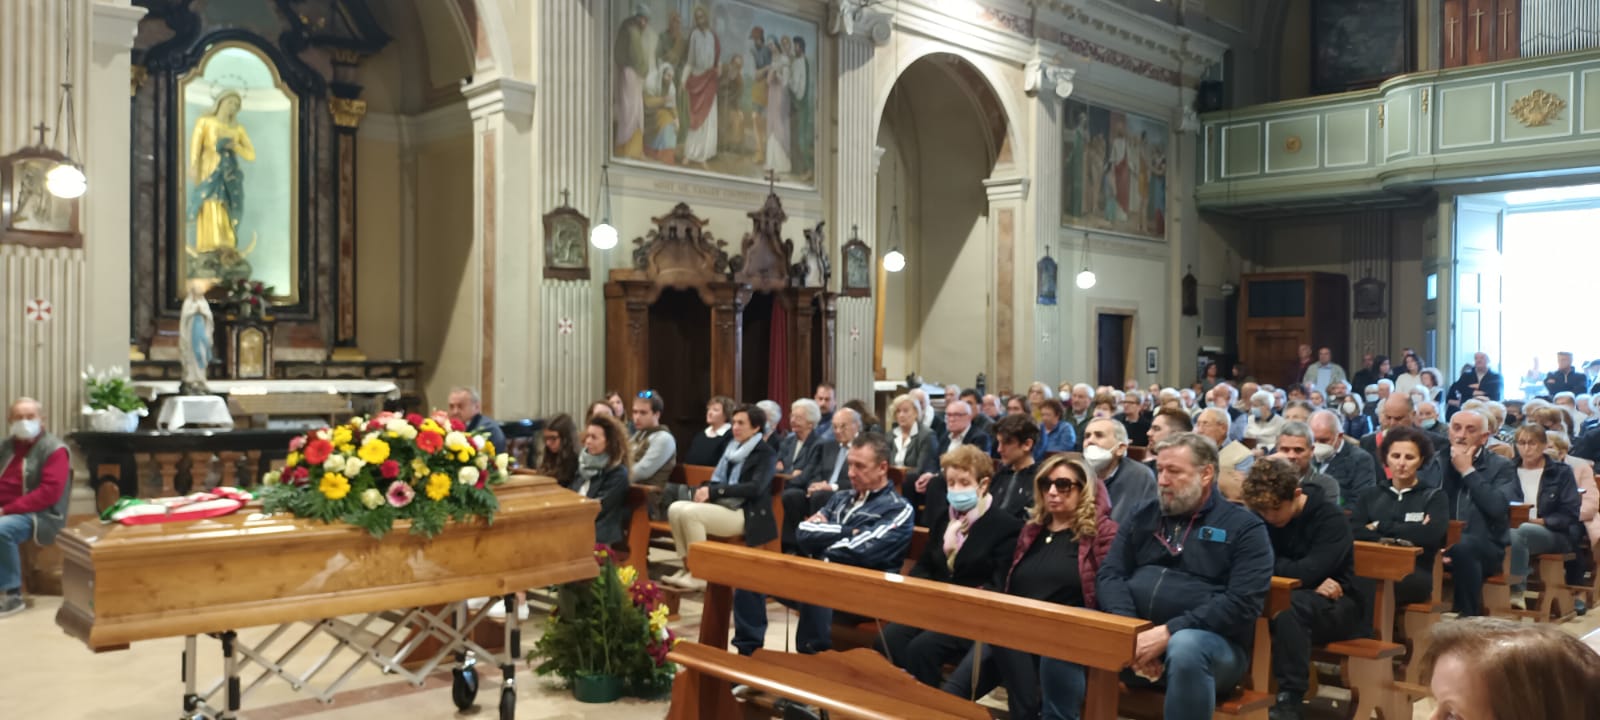 Truccazzano - Funerale dell'ex sindaco Vittorio Ronchi